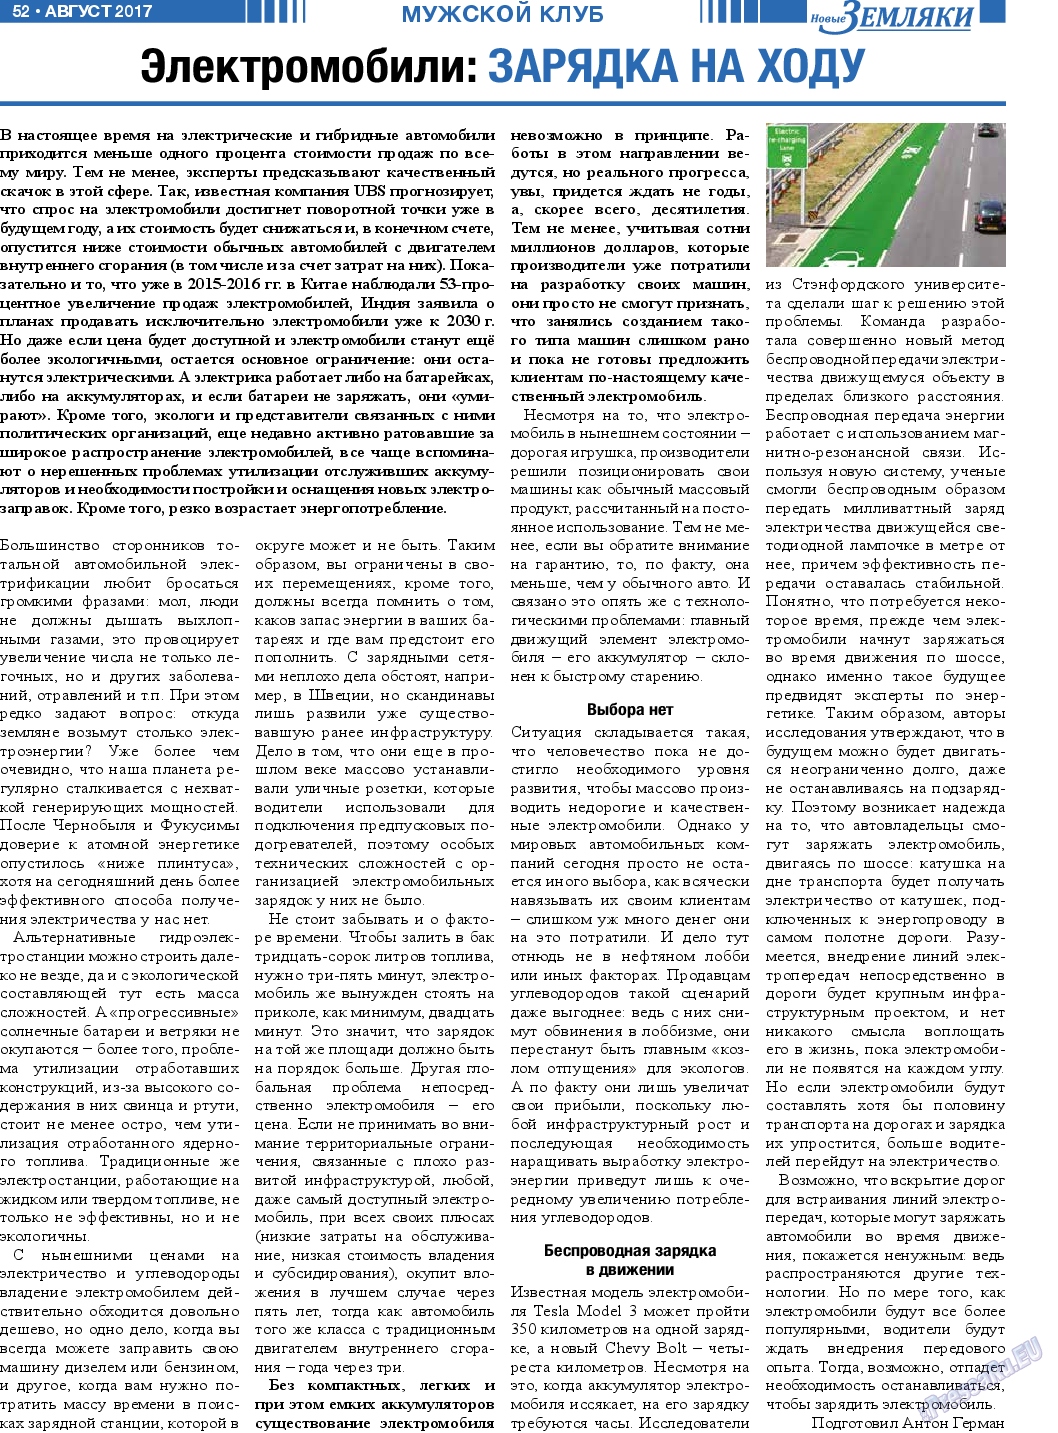 Новые Земляки, газета. 2017 №8 стр.52